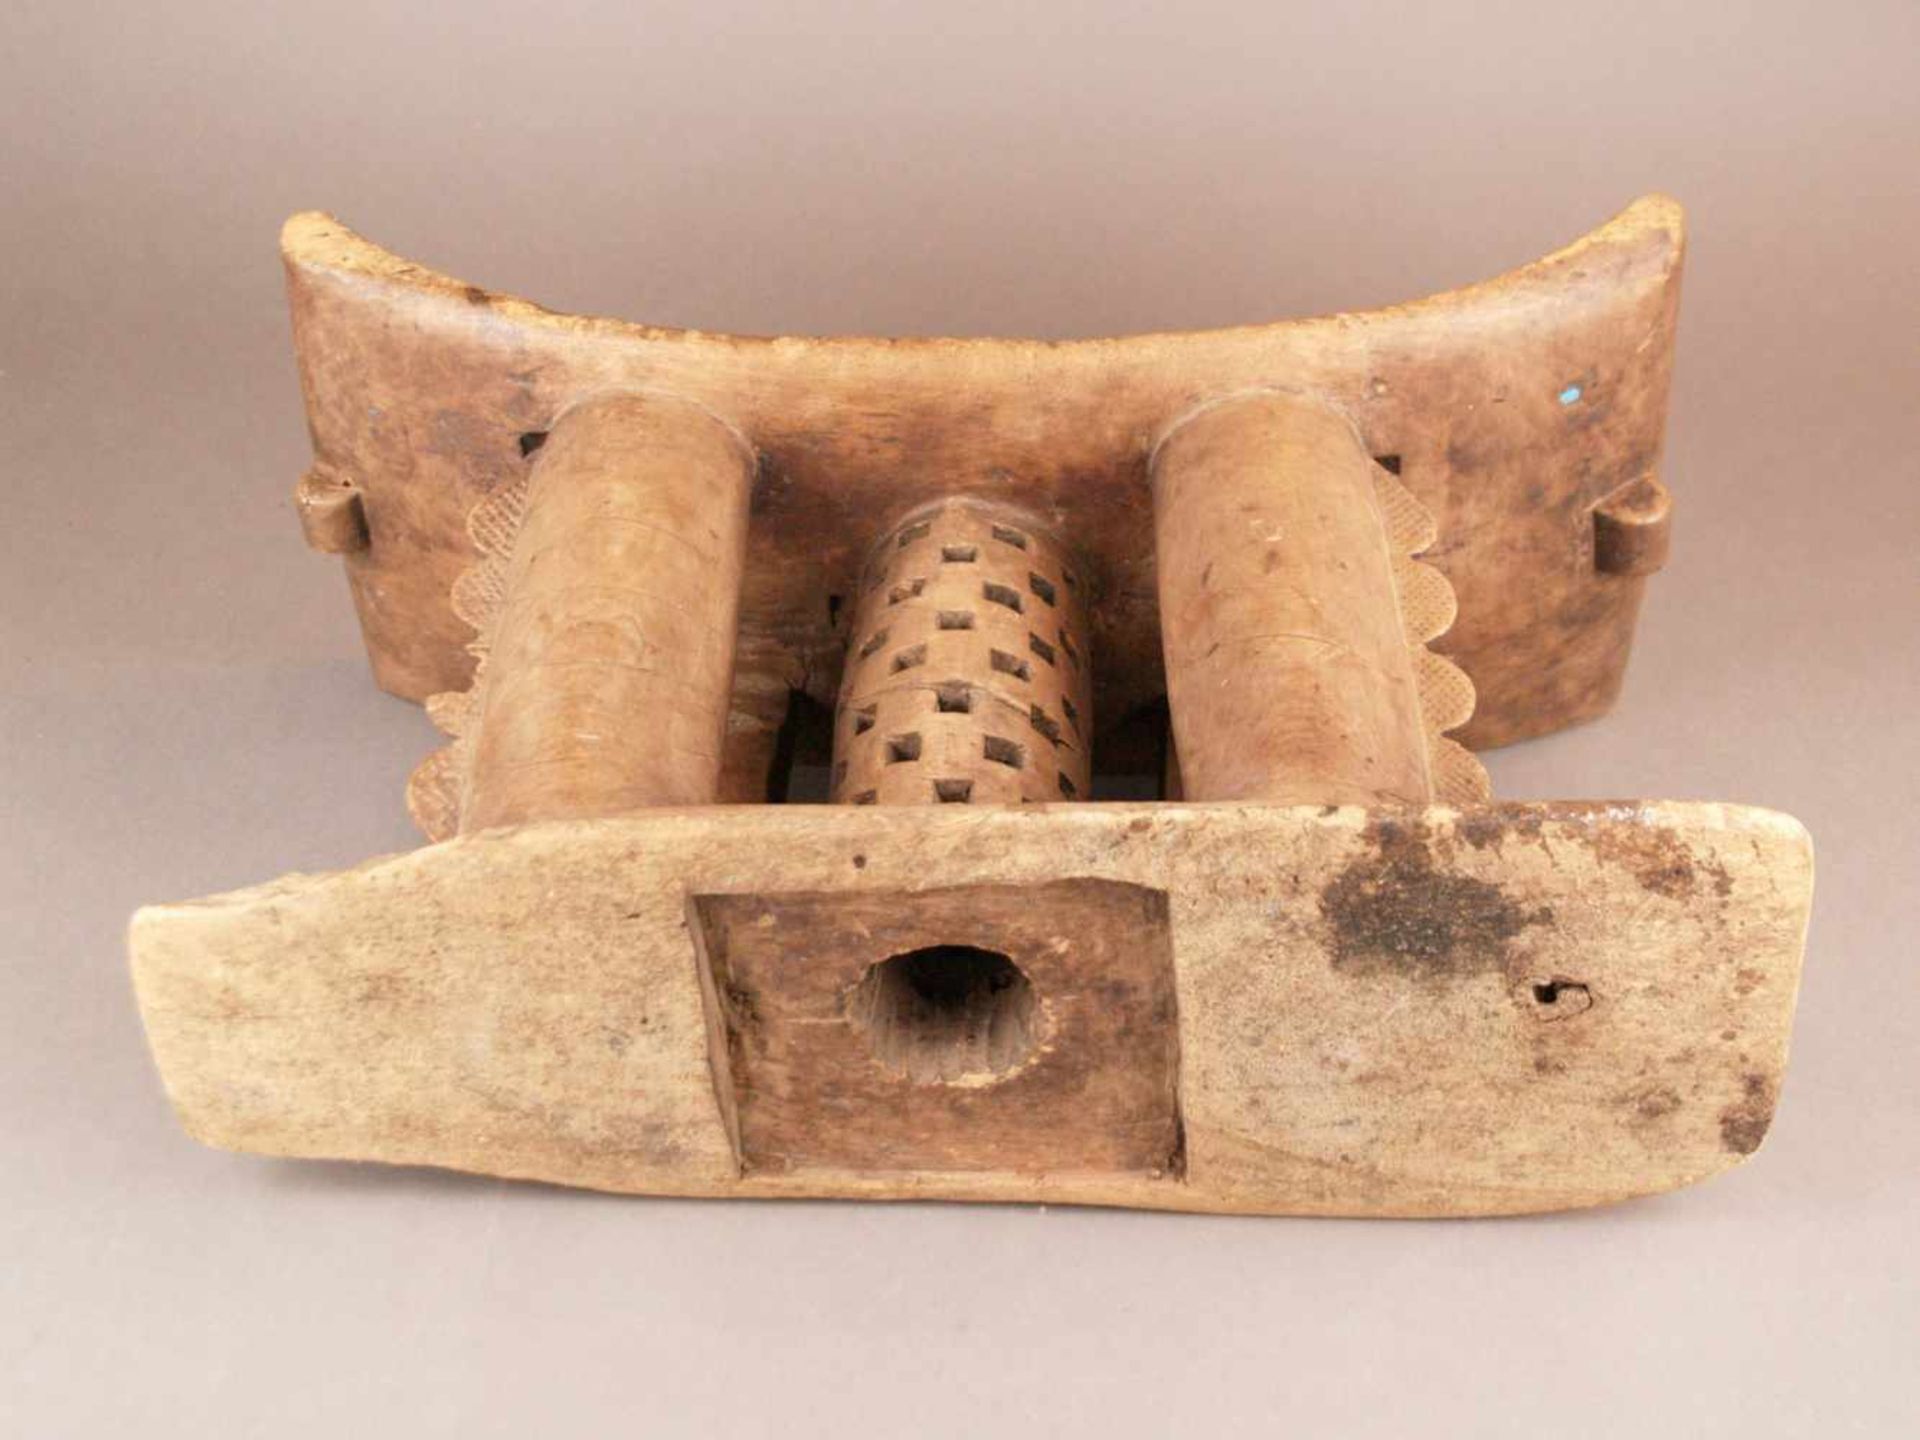 Afrikanischer Hocker - Ashanti, Ghana, wohl 19. Jh., Holz, aus einem Stück geschnitzt, - Bild 7 aus 7